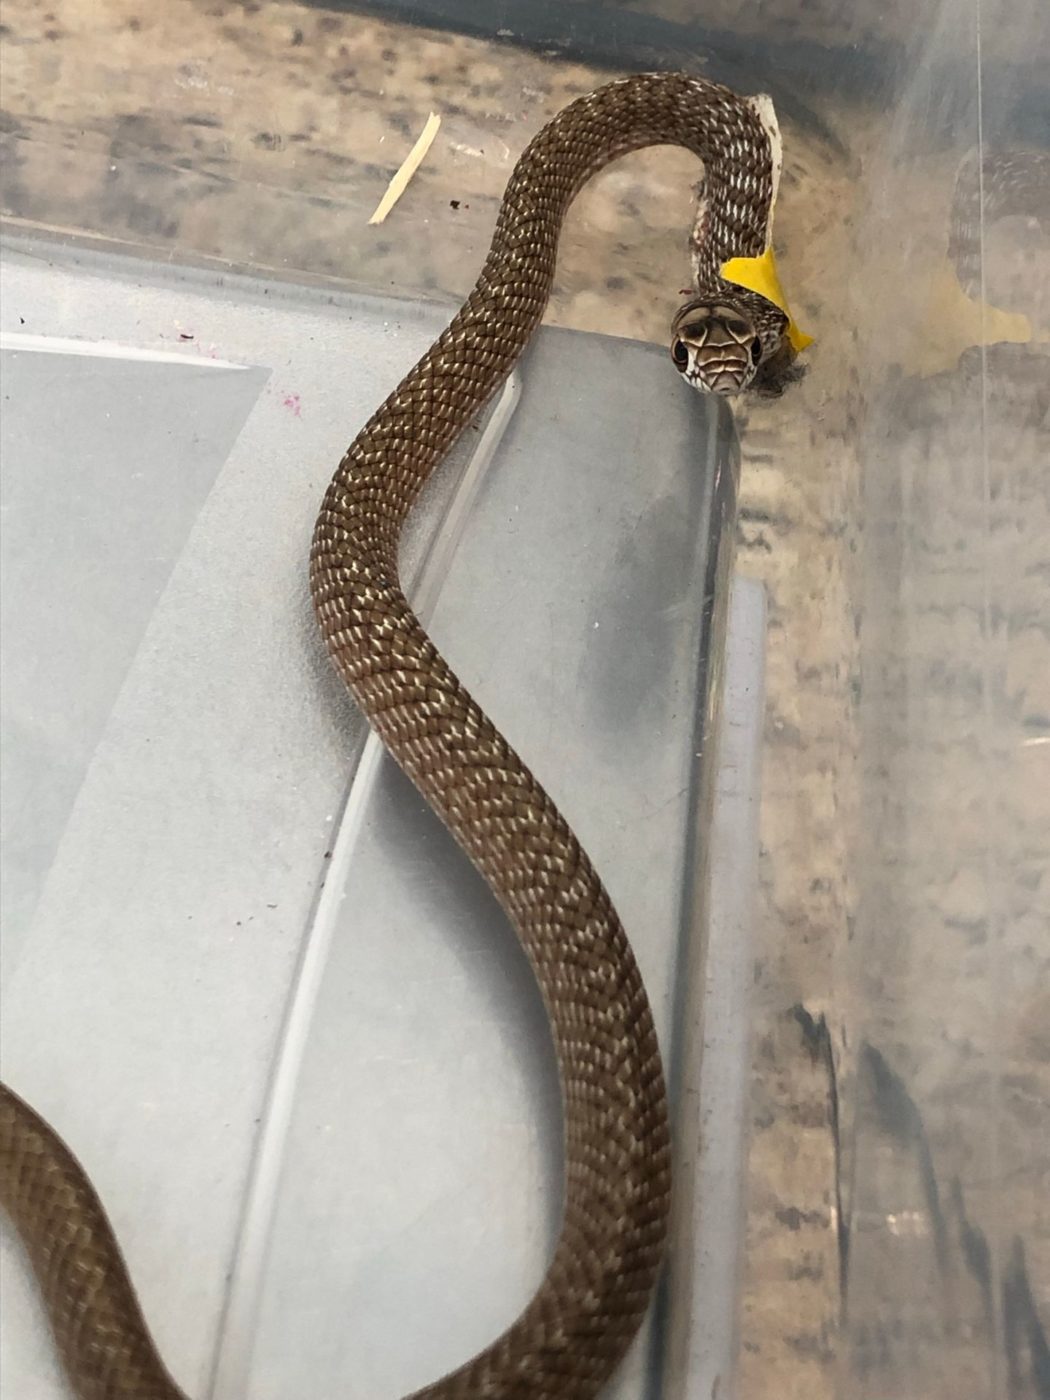 Coachwhip snake in wildlife hospital